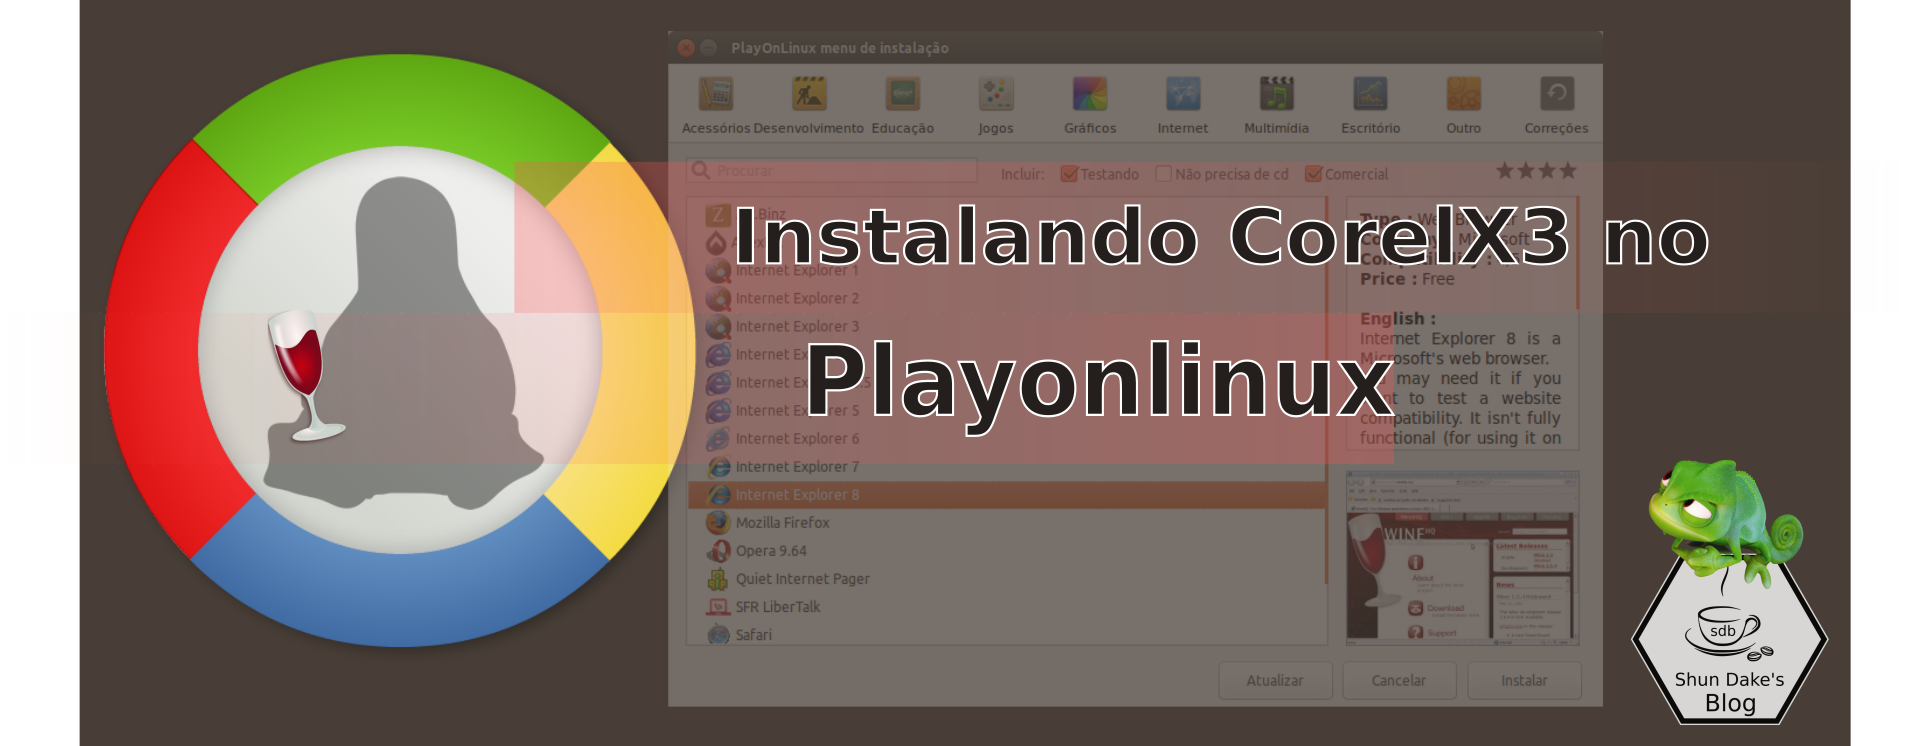 Instalando-CorelX3-no-playonlinux